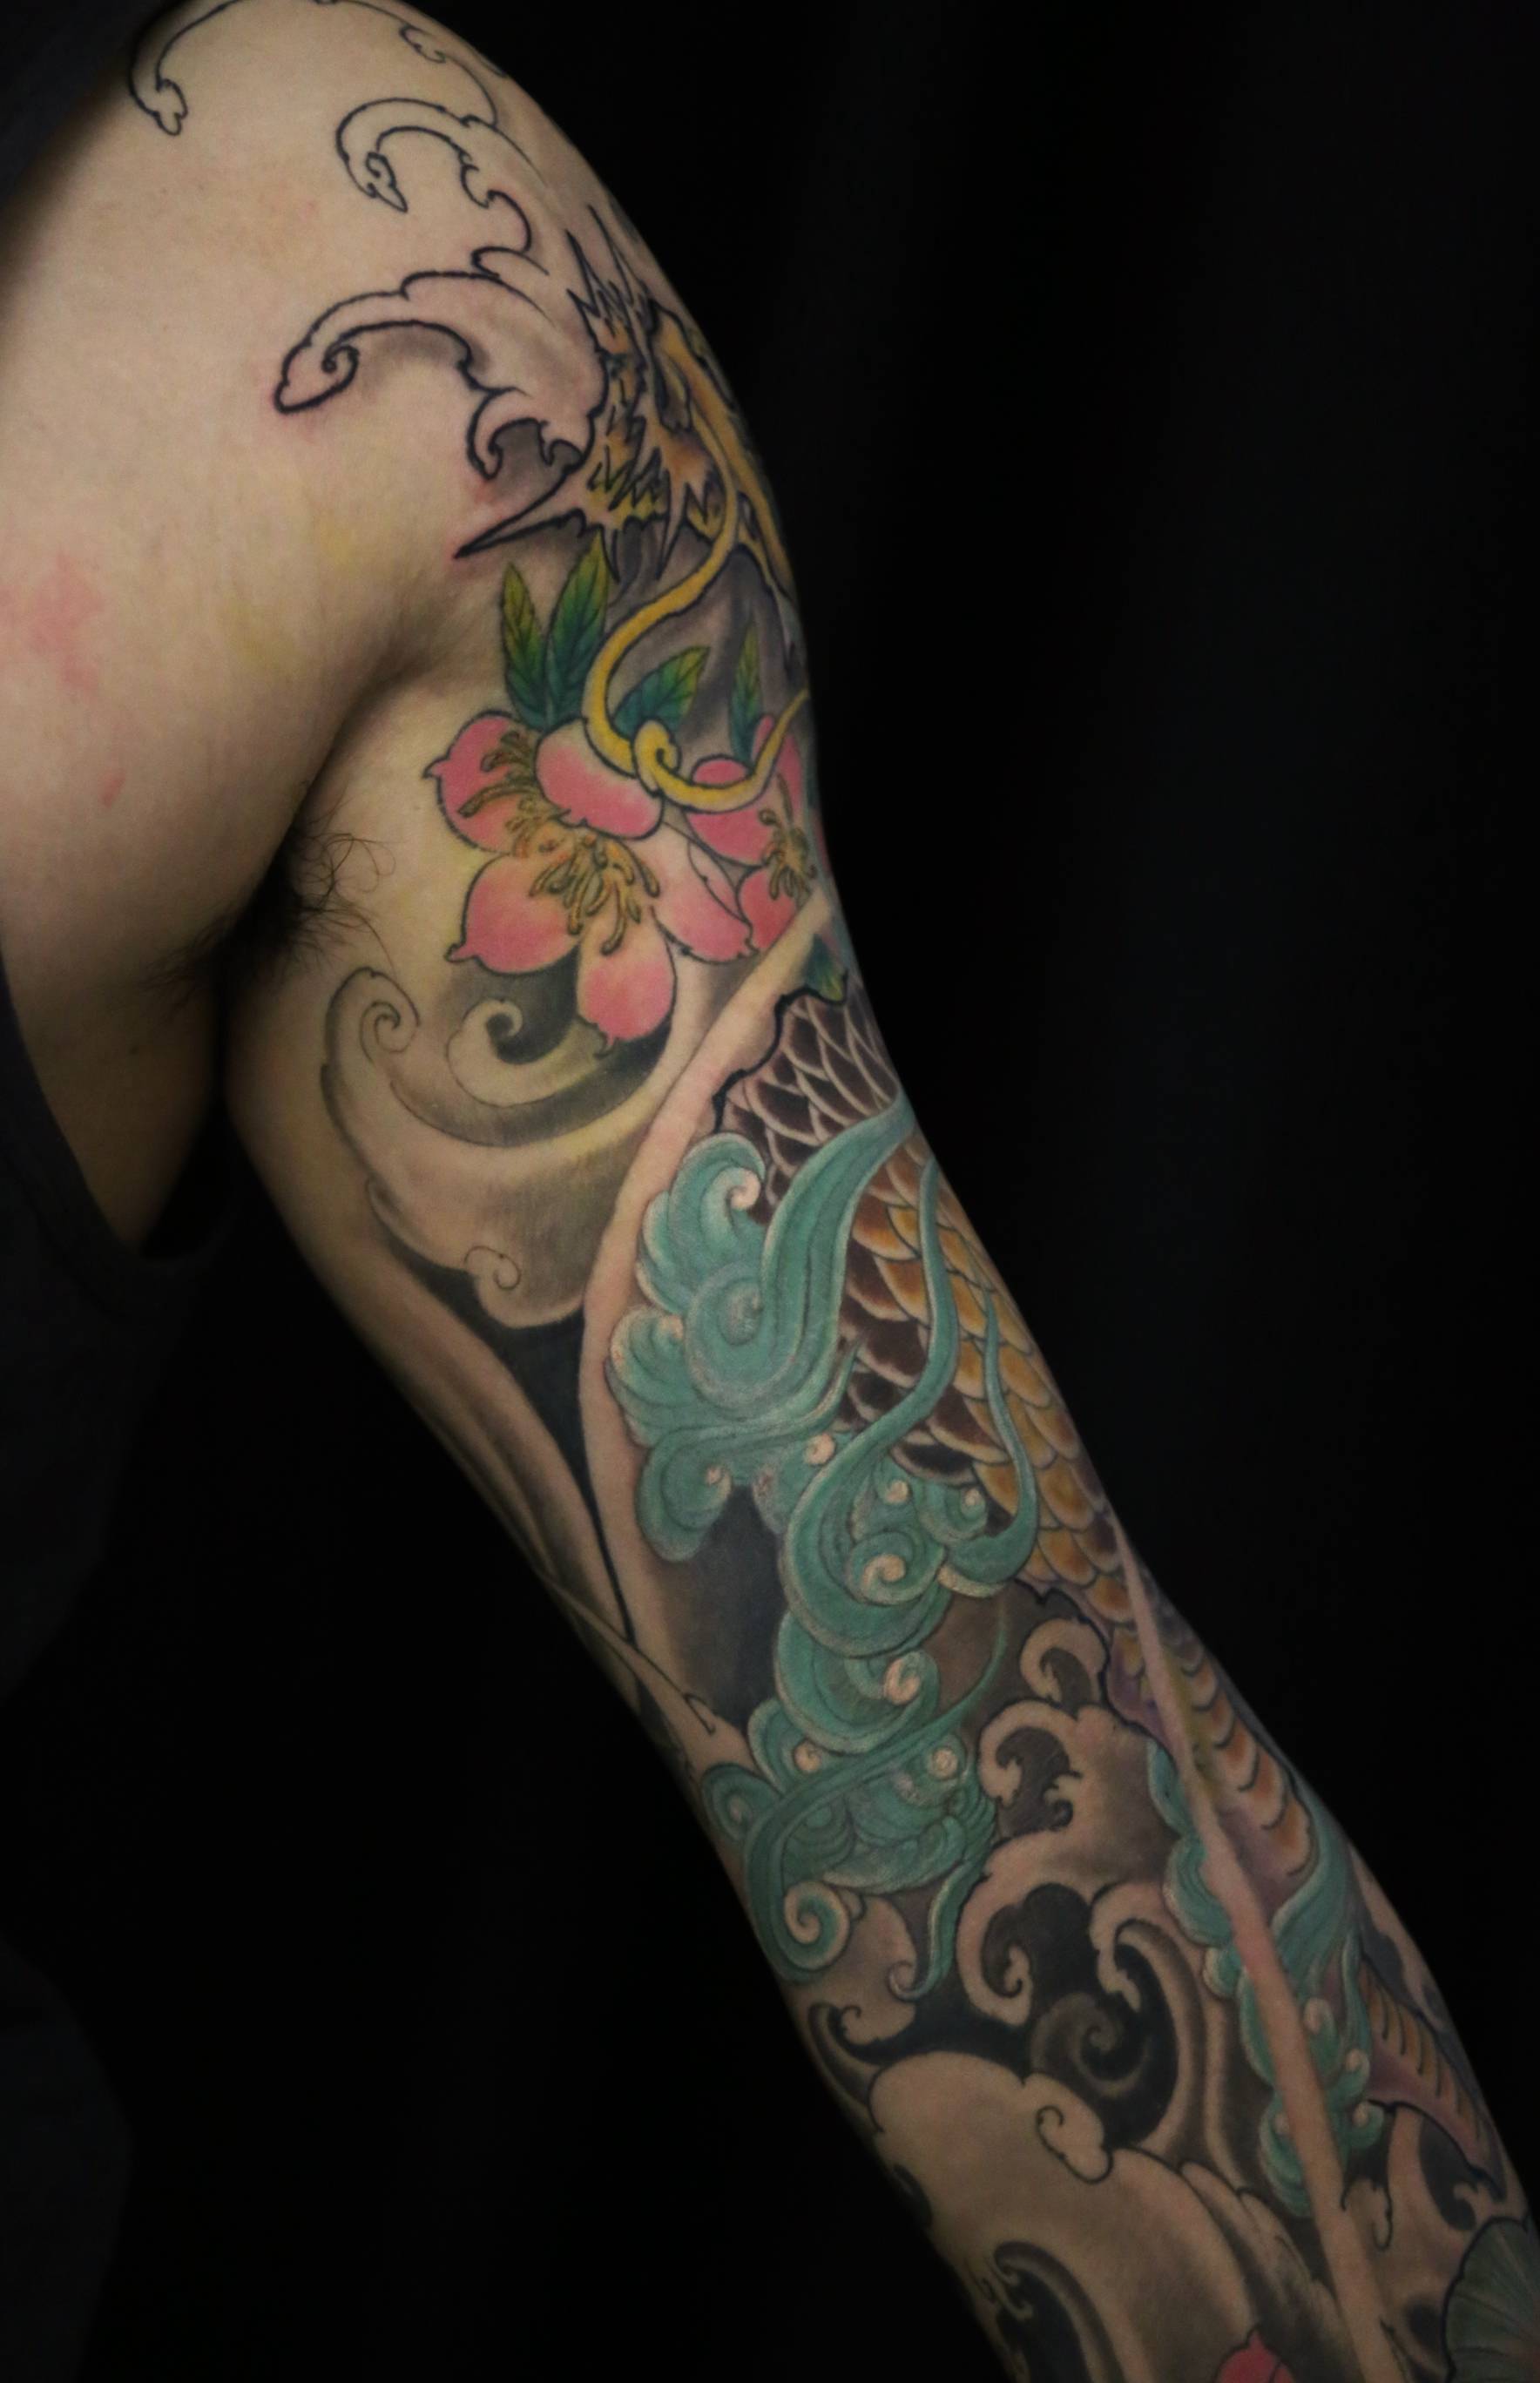 怎么选择麒麟纹身图案,花臂麒麟纹身设计,麒麟纹身手稿